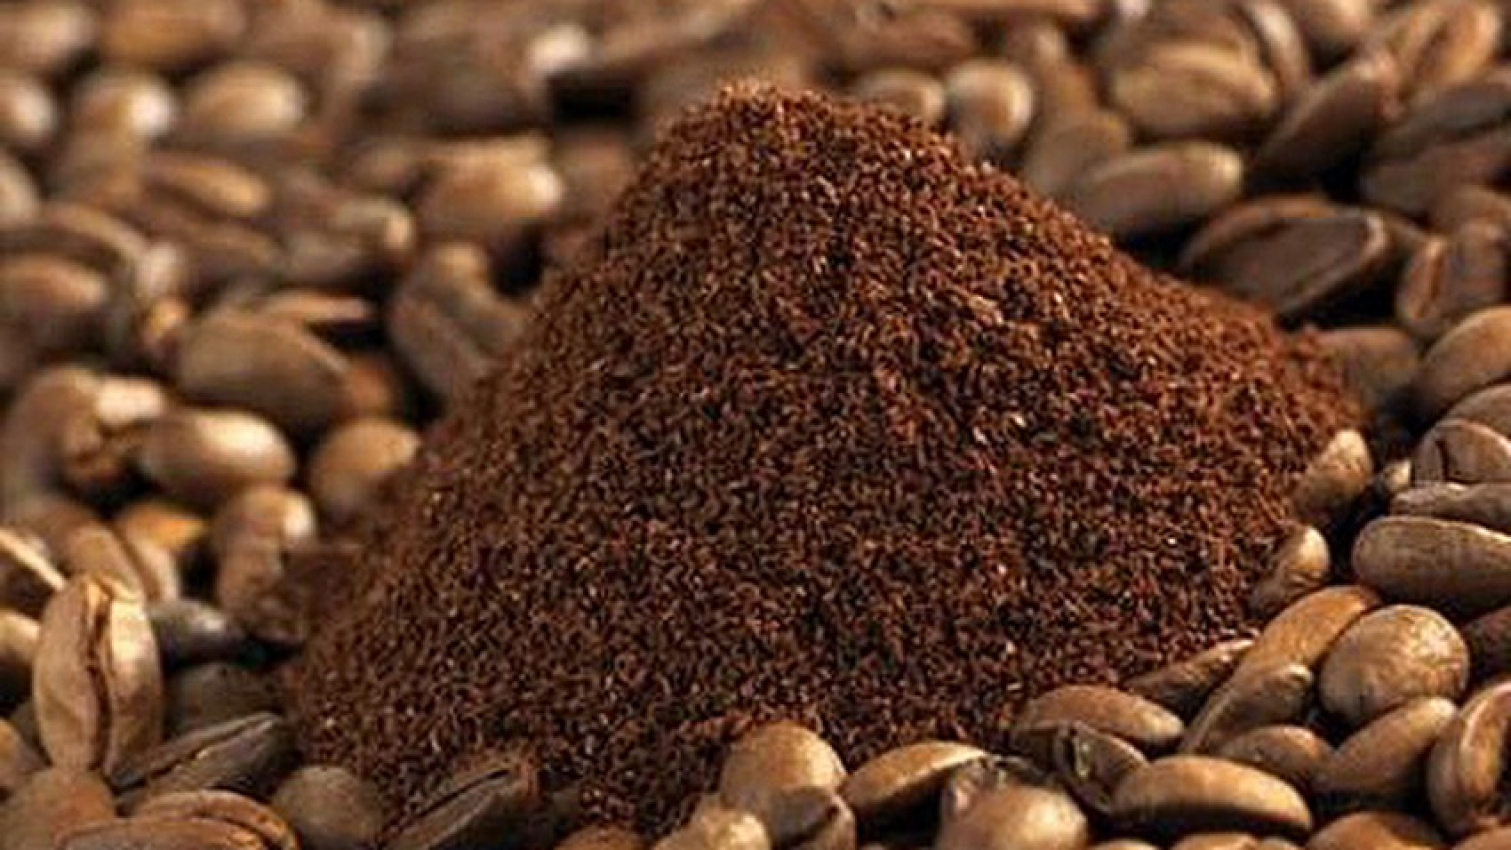 kiến thức coffee, loại coffee, cà phê bột là gì? bột cà phê nguyên chất giá bao nhiêu?